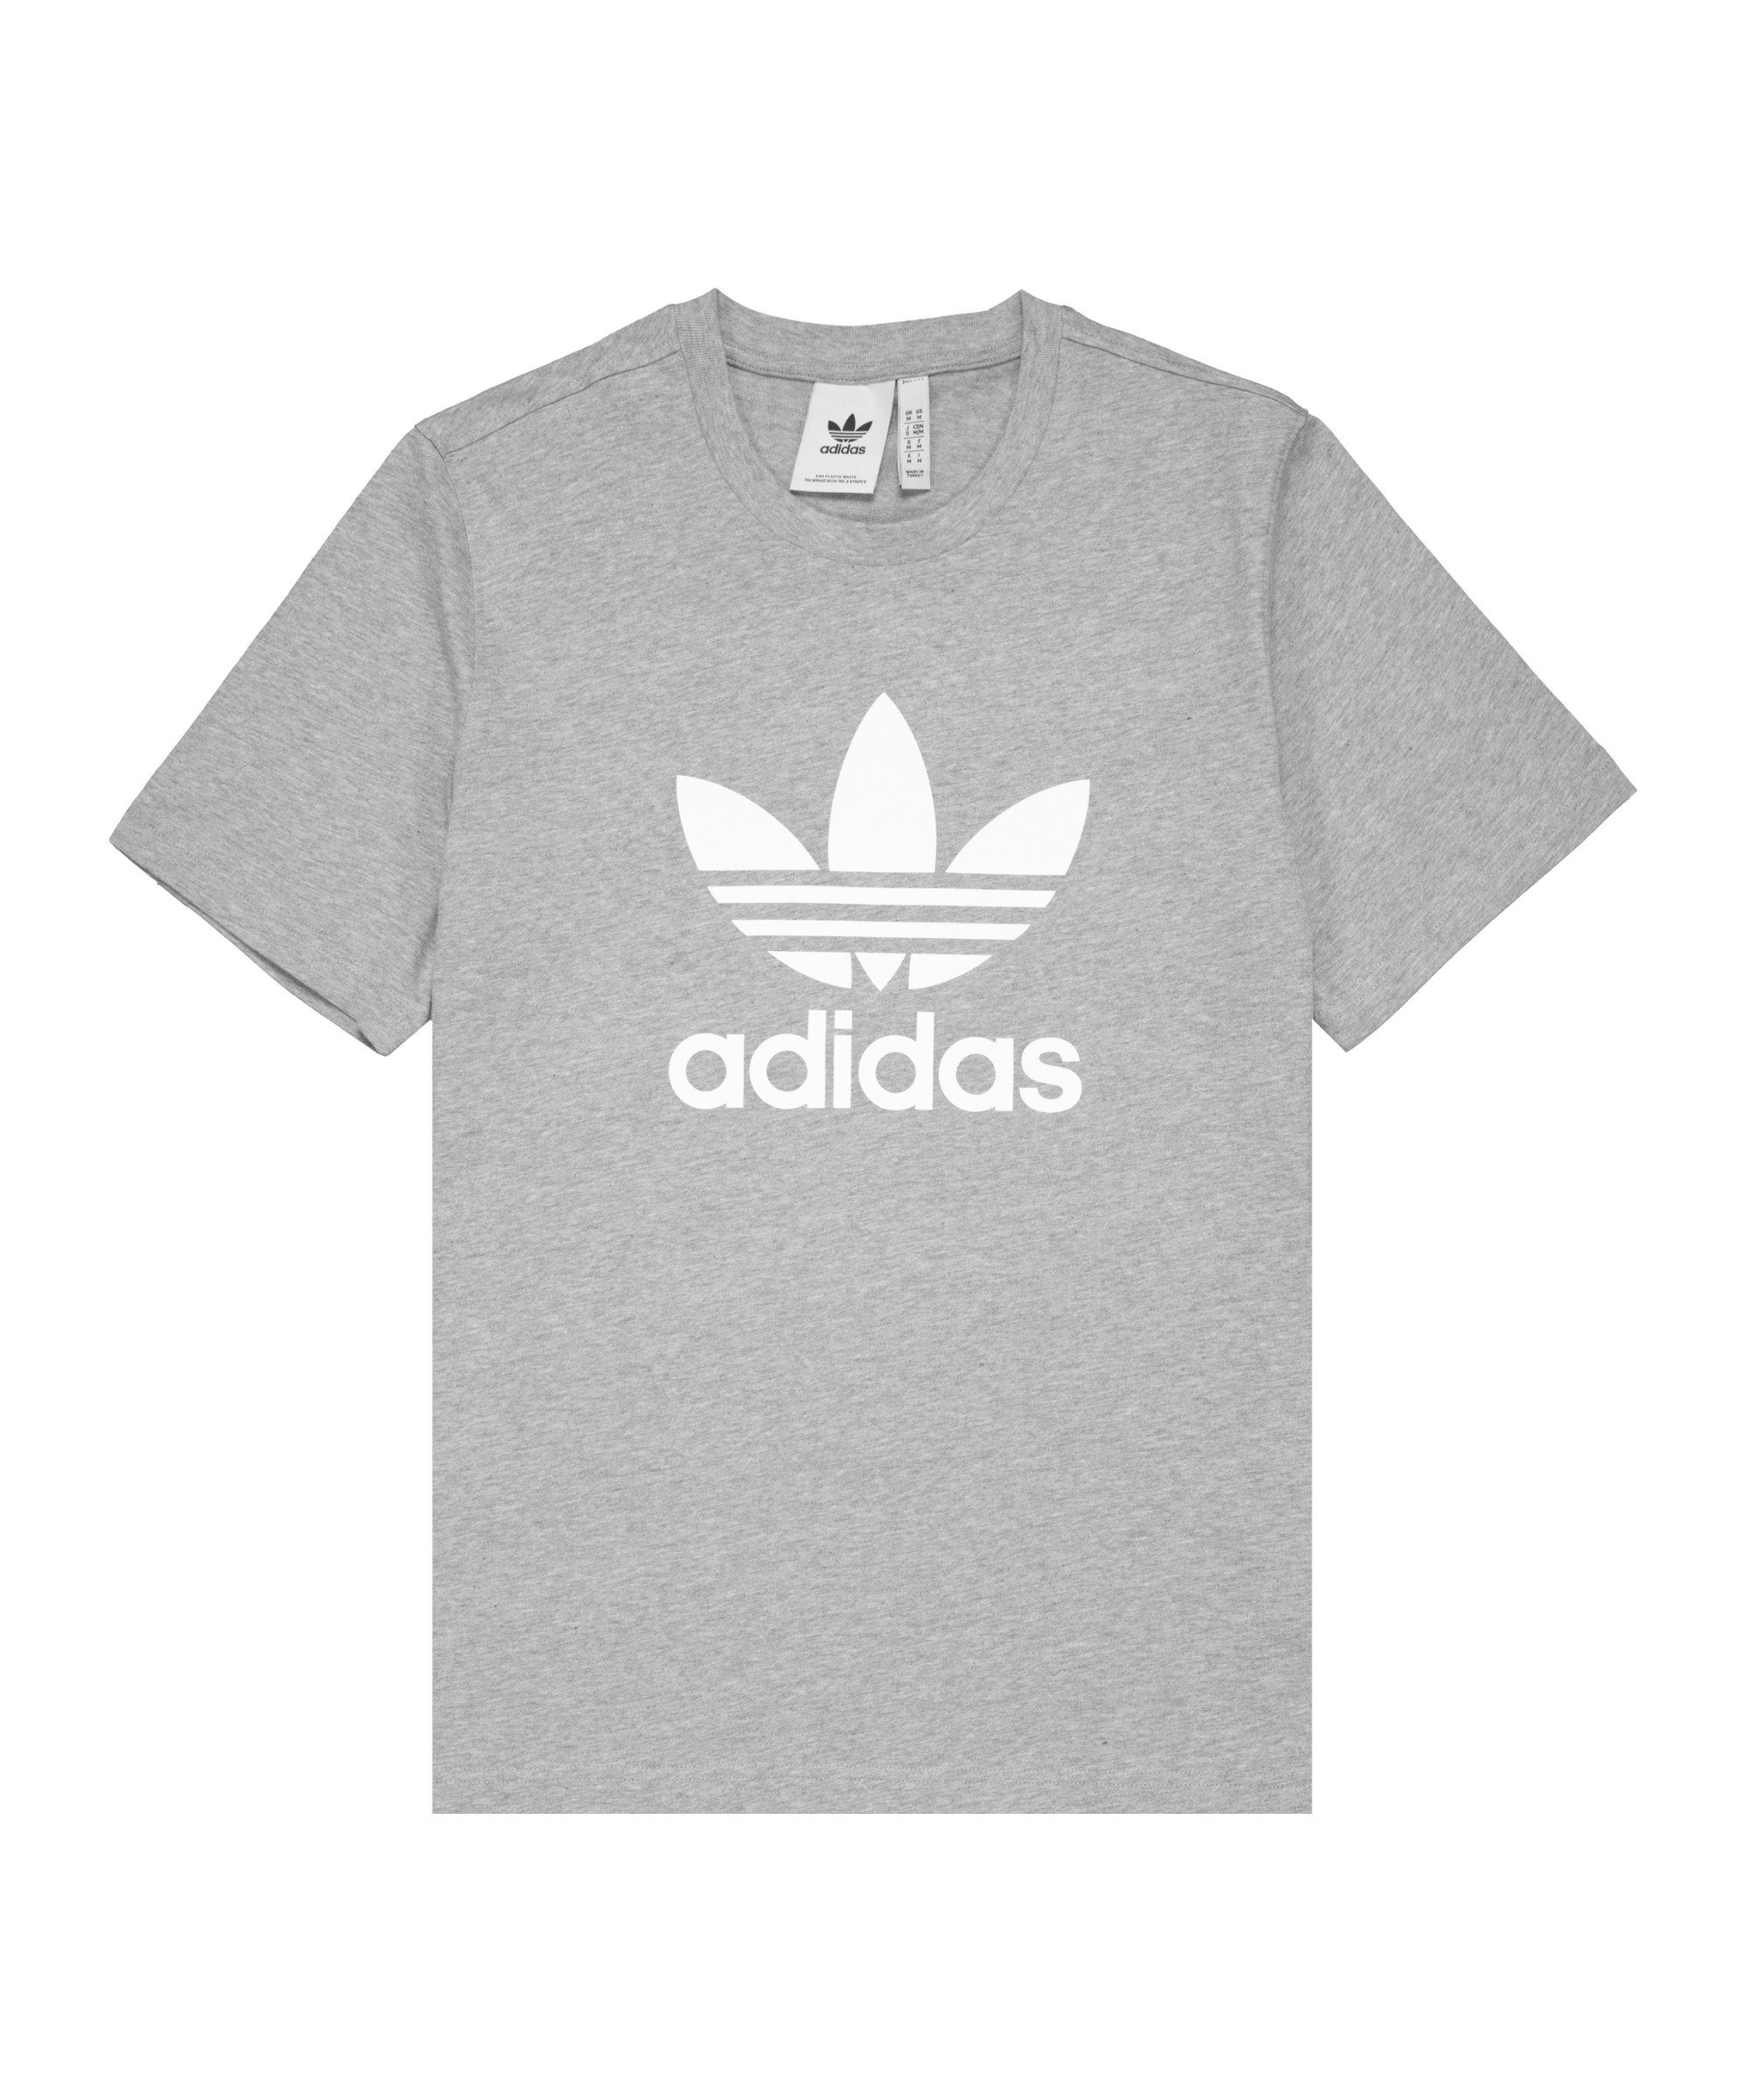 Online-Shop für Markenartikel adidas Originals T-Shirt Trefoil Nachhaltiges T-Shirt Produkt grauweiss